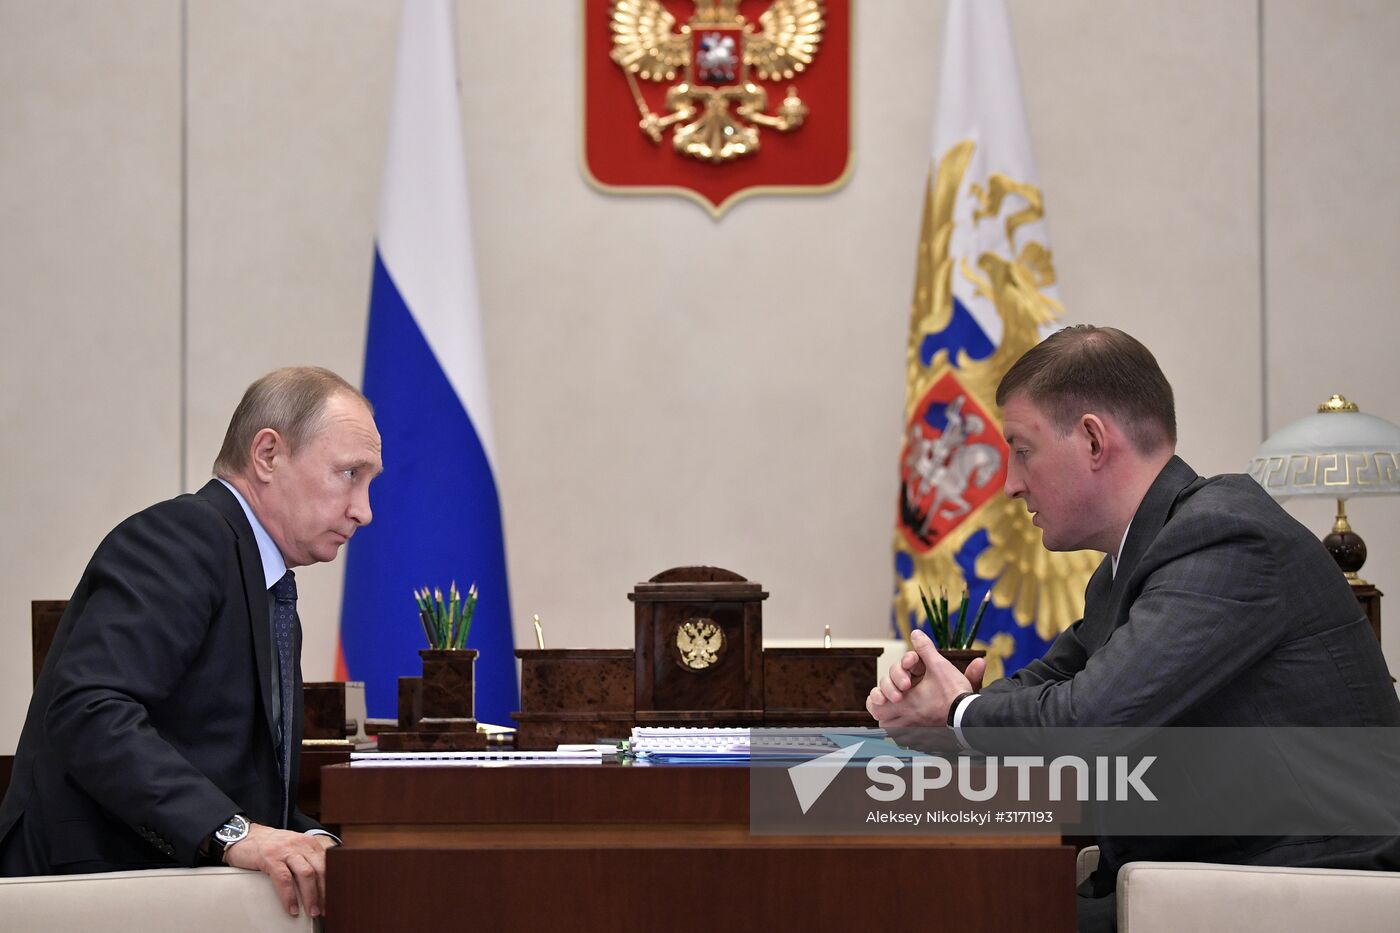 President Vladimir Putin meets with Pskov Region Governor Andrei Turchak